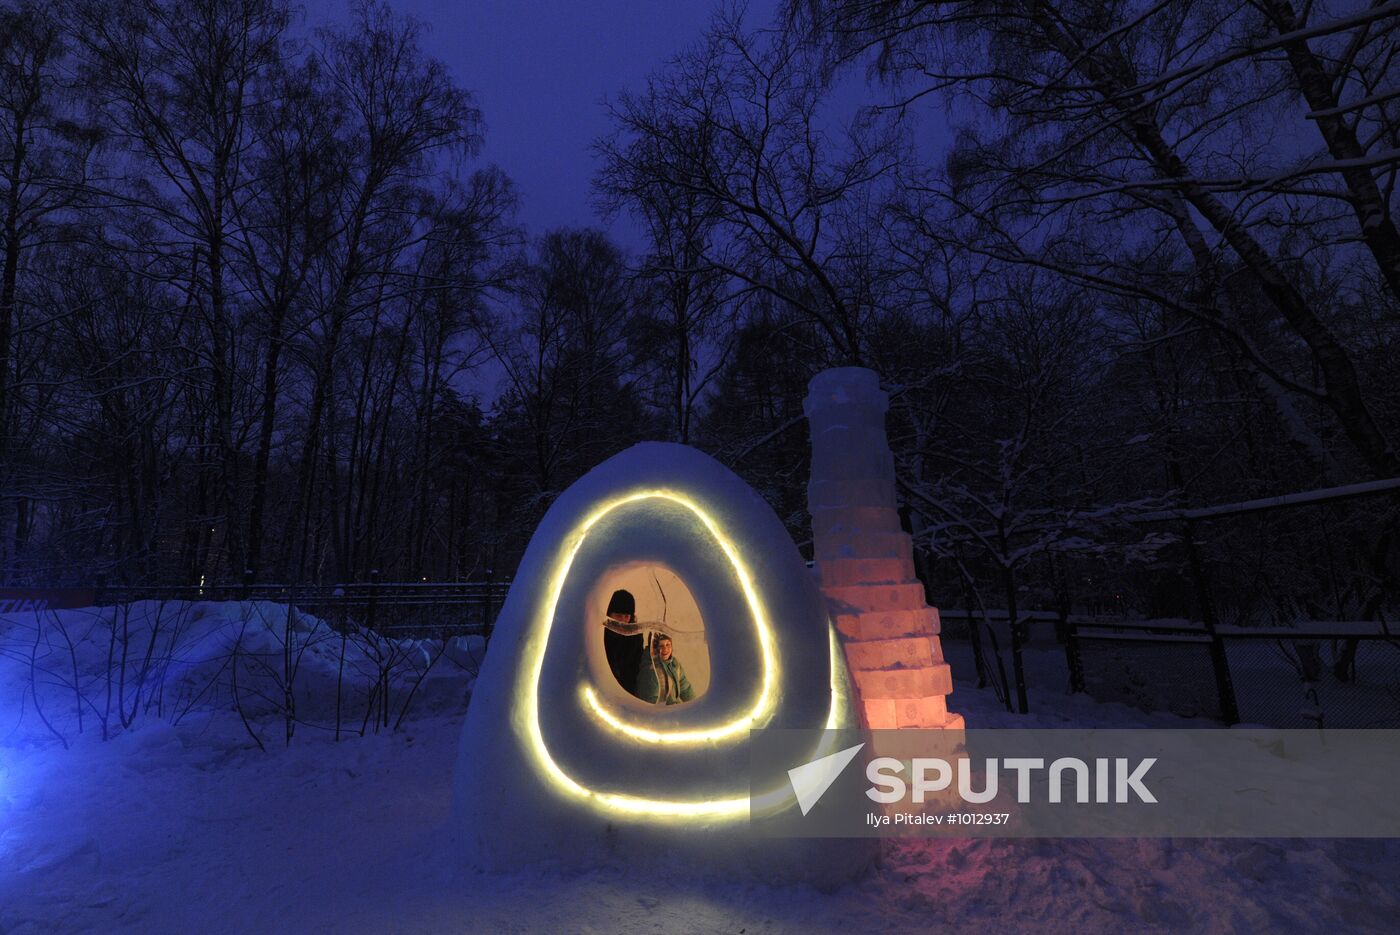 Snow City opens in Sokolniki